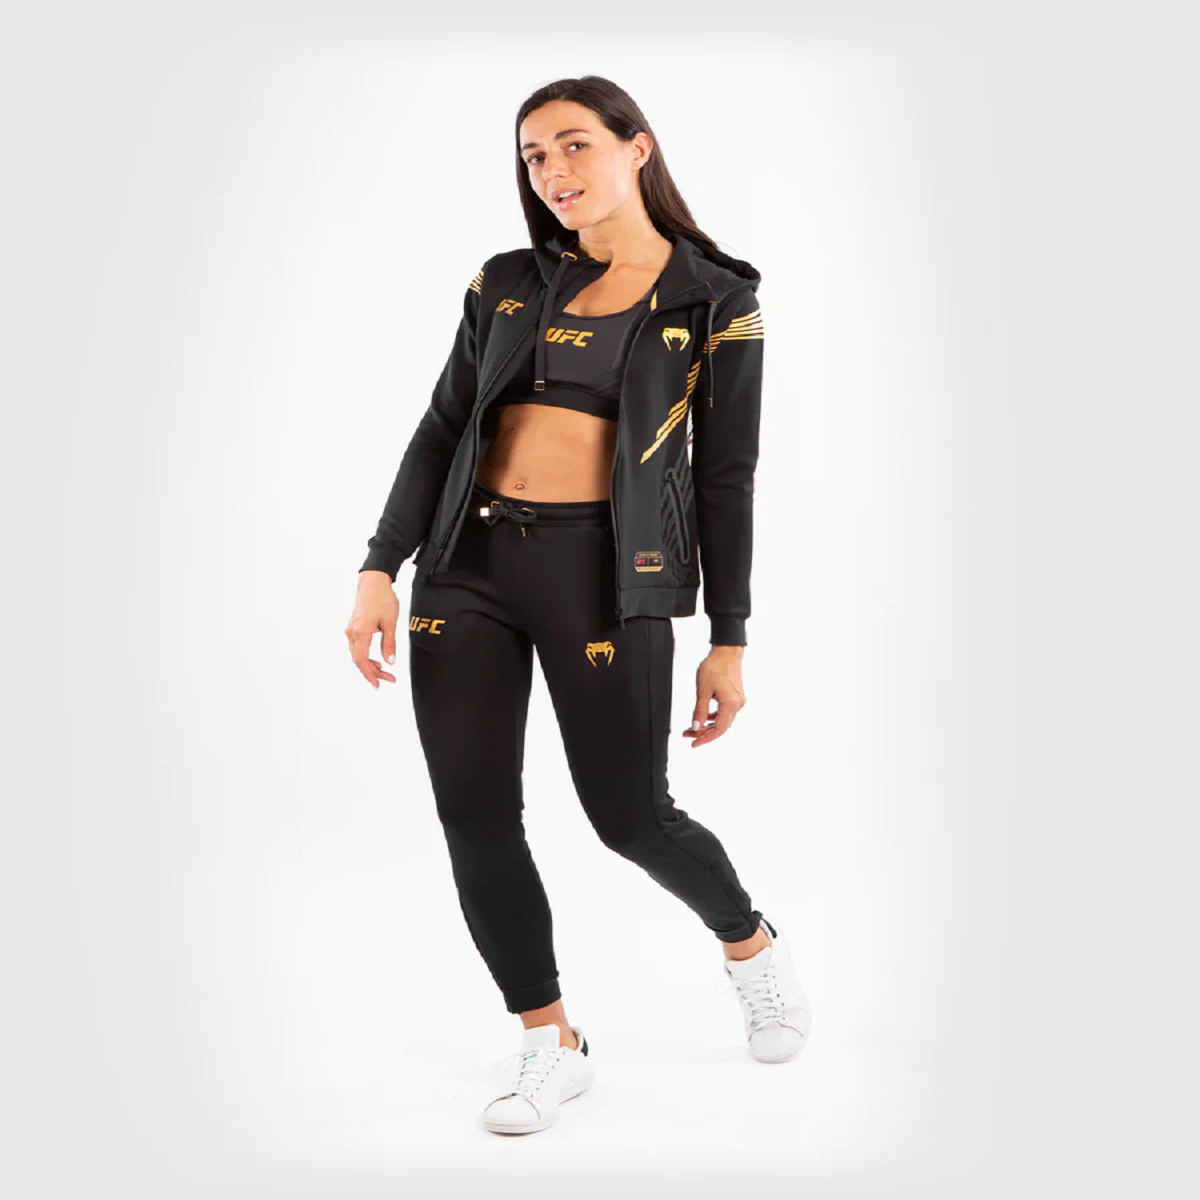 Venum Women's UFC Authentic Fight Night Walkout Sweatpants - Black/Gold Venum